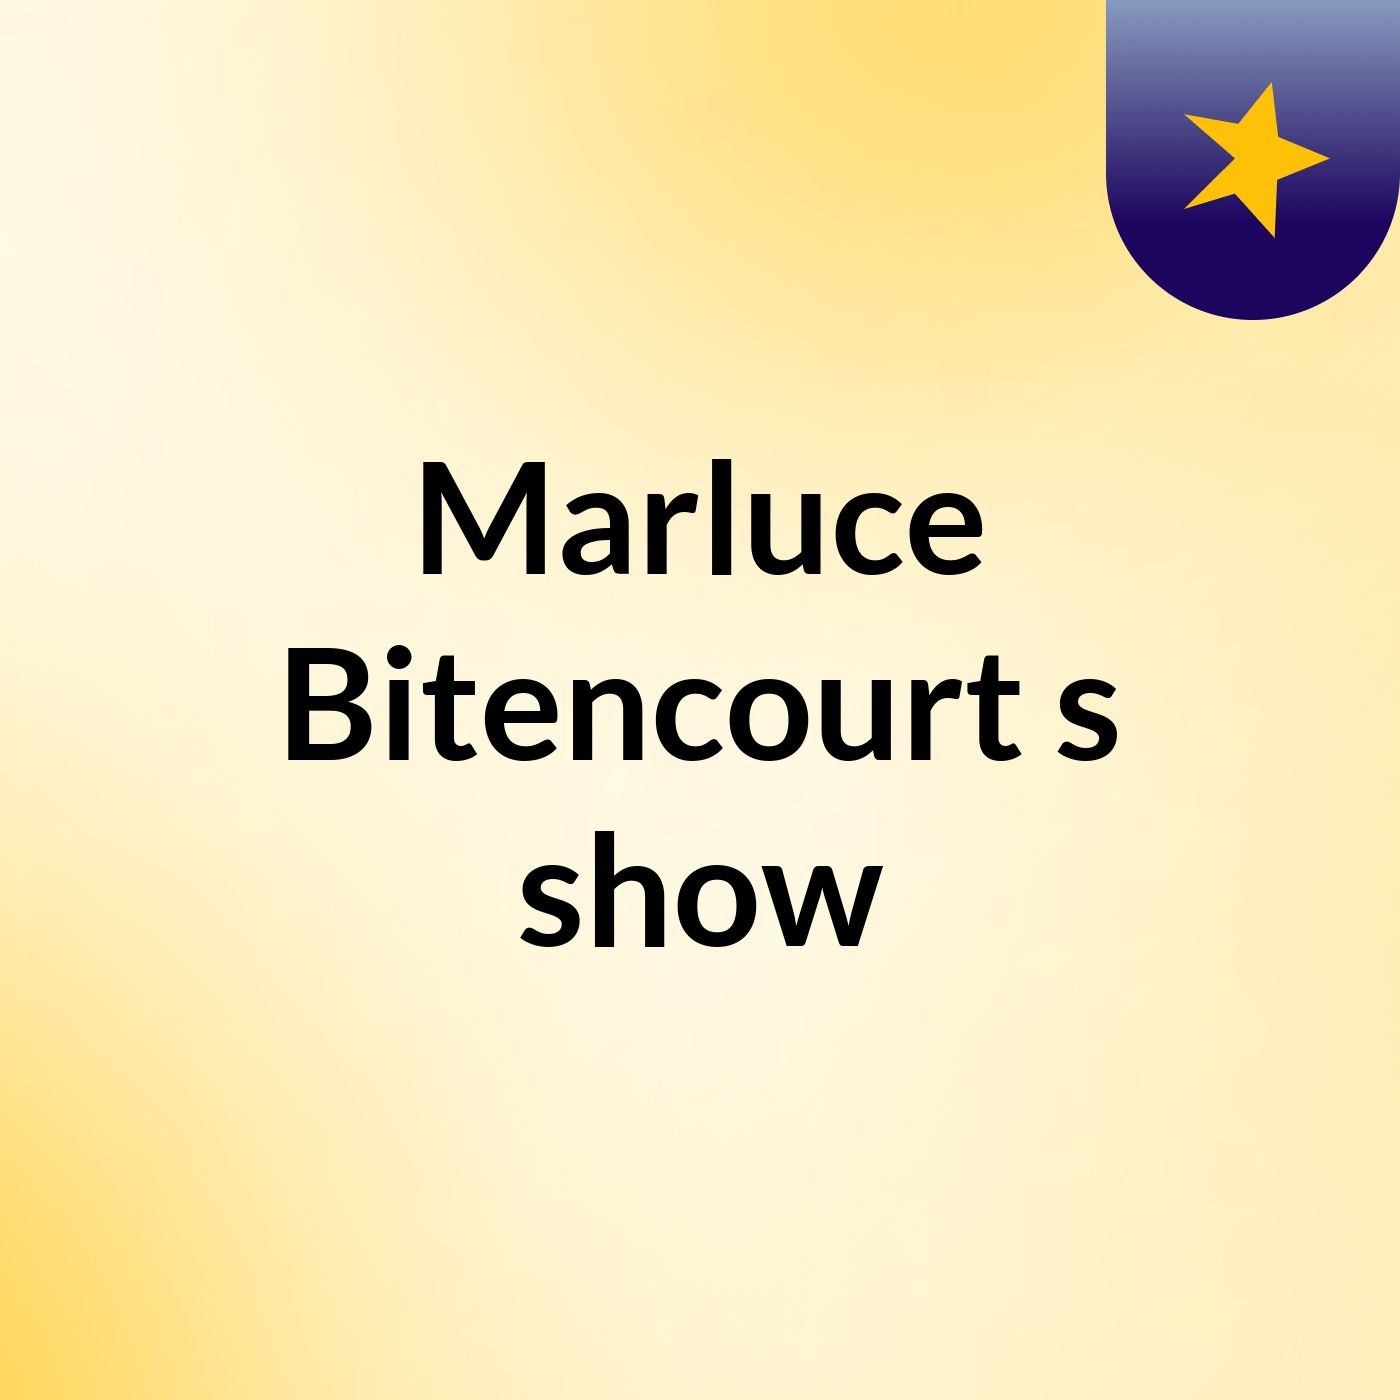 Marluce Bitencourt's show